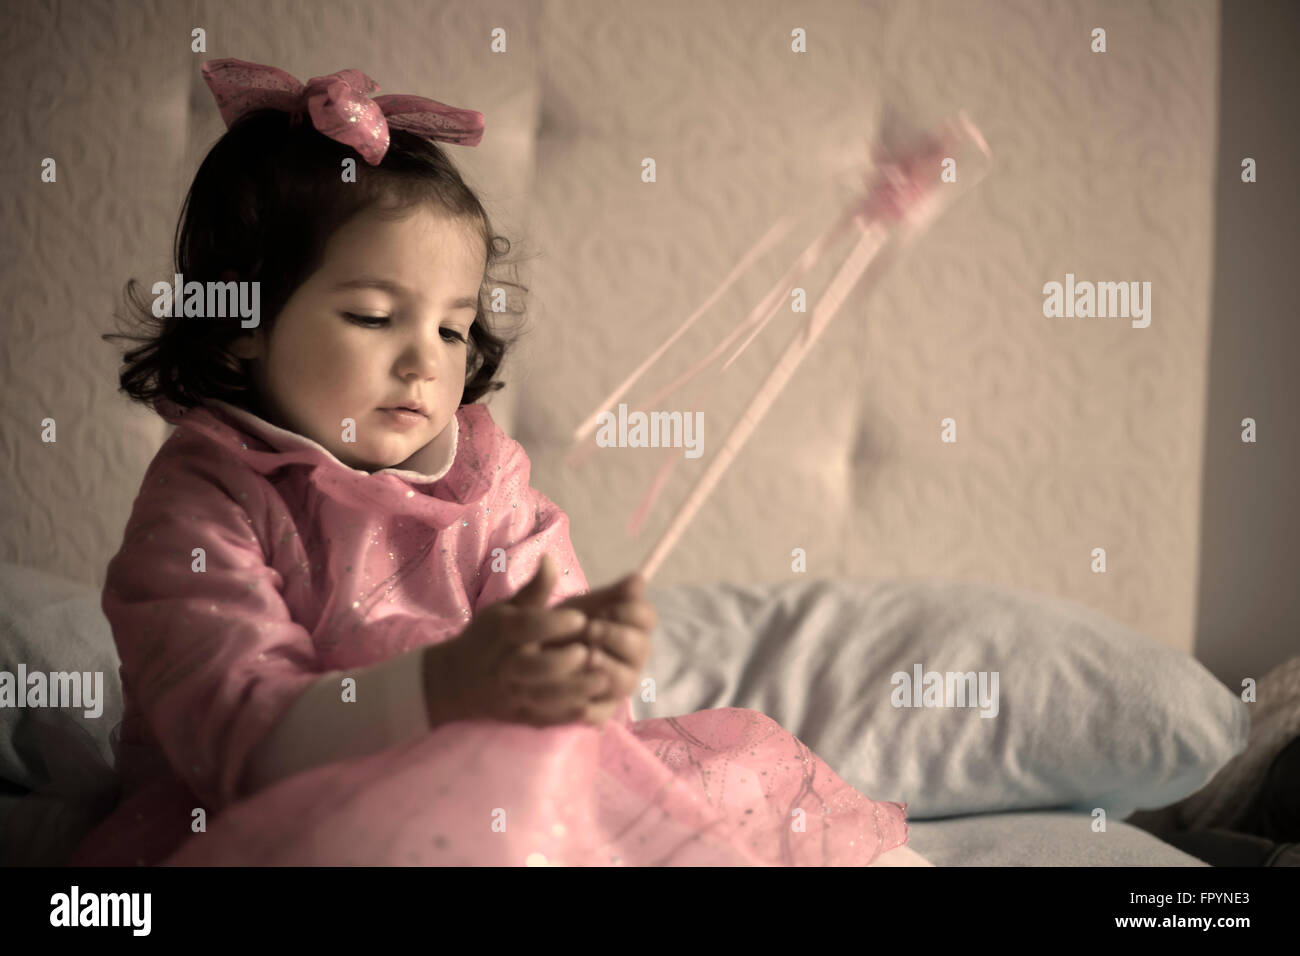 Kleines Mädchen verkleidet als eine Fee mit Zauberstab auf dem Bett sitzen und spielen Stockfoto